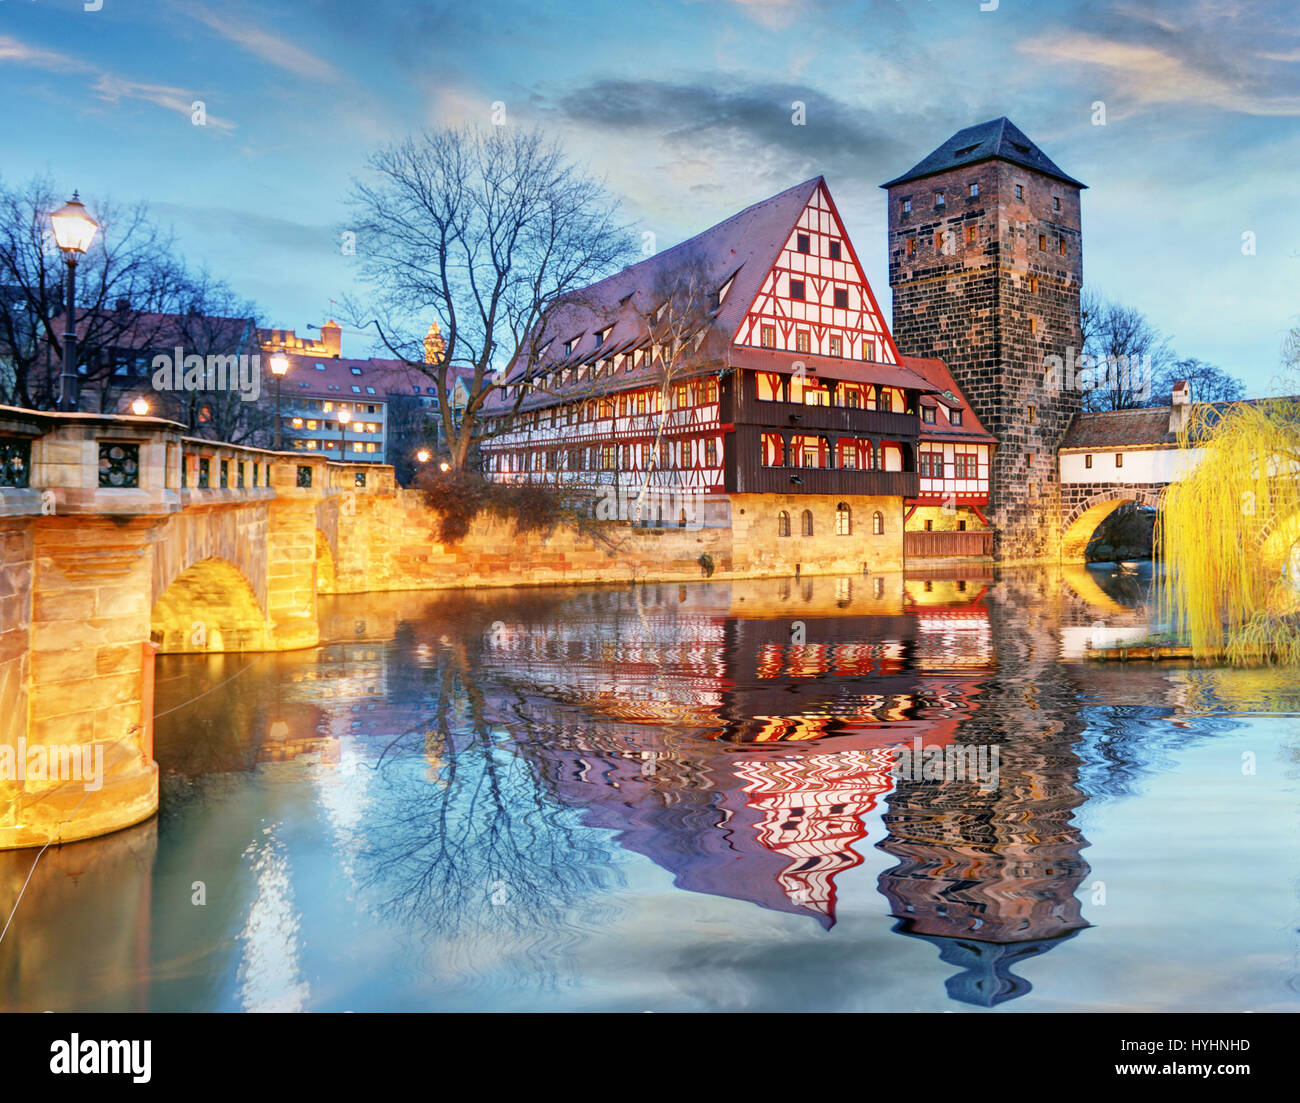 La ville de Nuremberg - Les bords de la rivière Pegnitz, Allemagne Banque D'Images